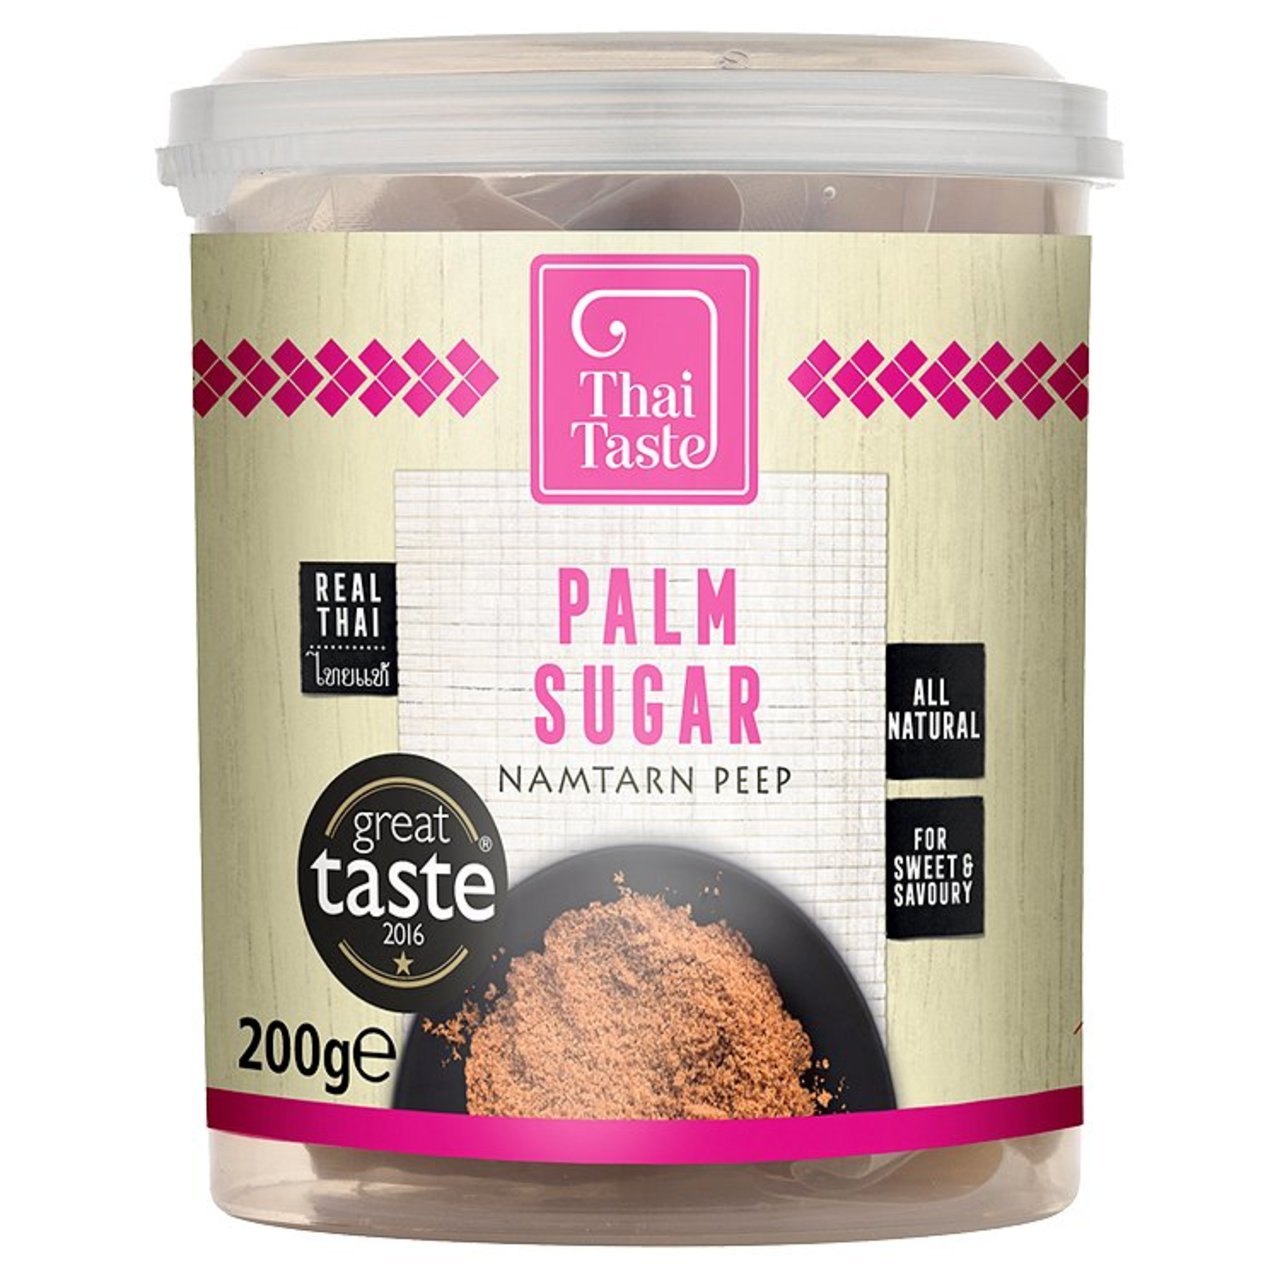 Thai Taste Palm Sugar 200g